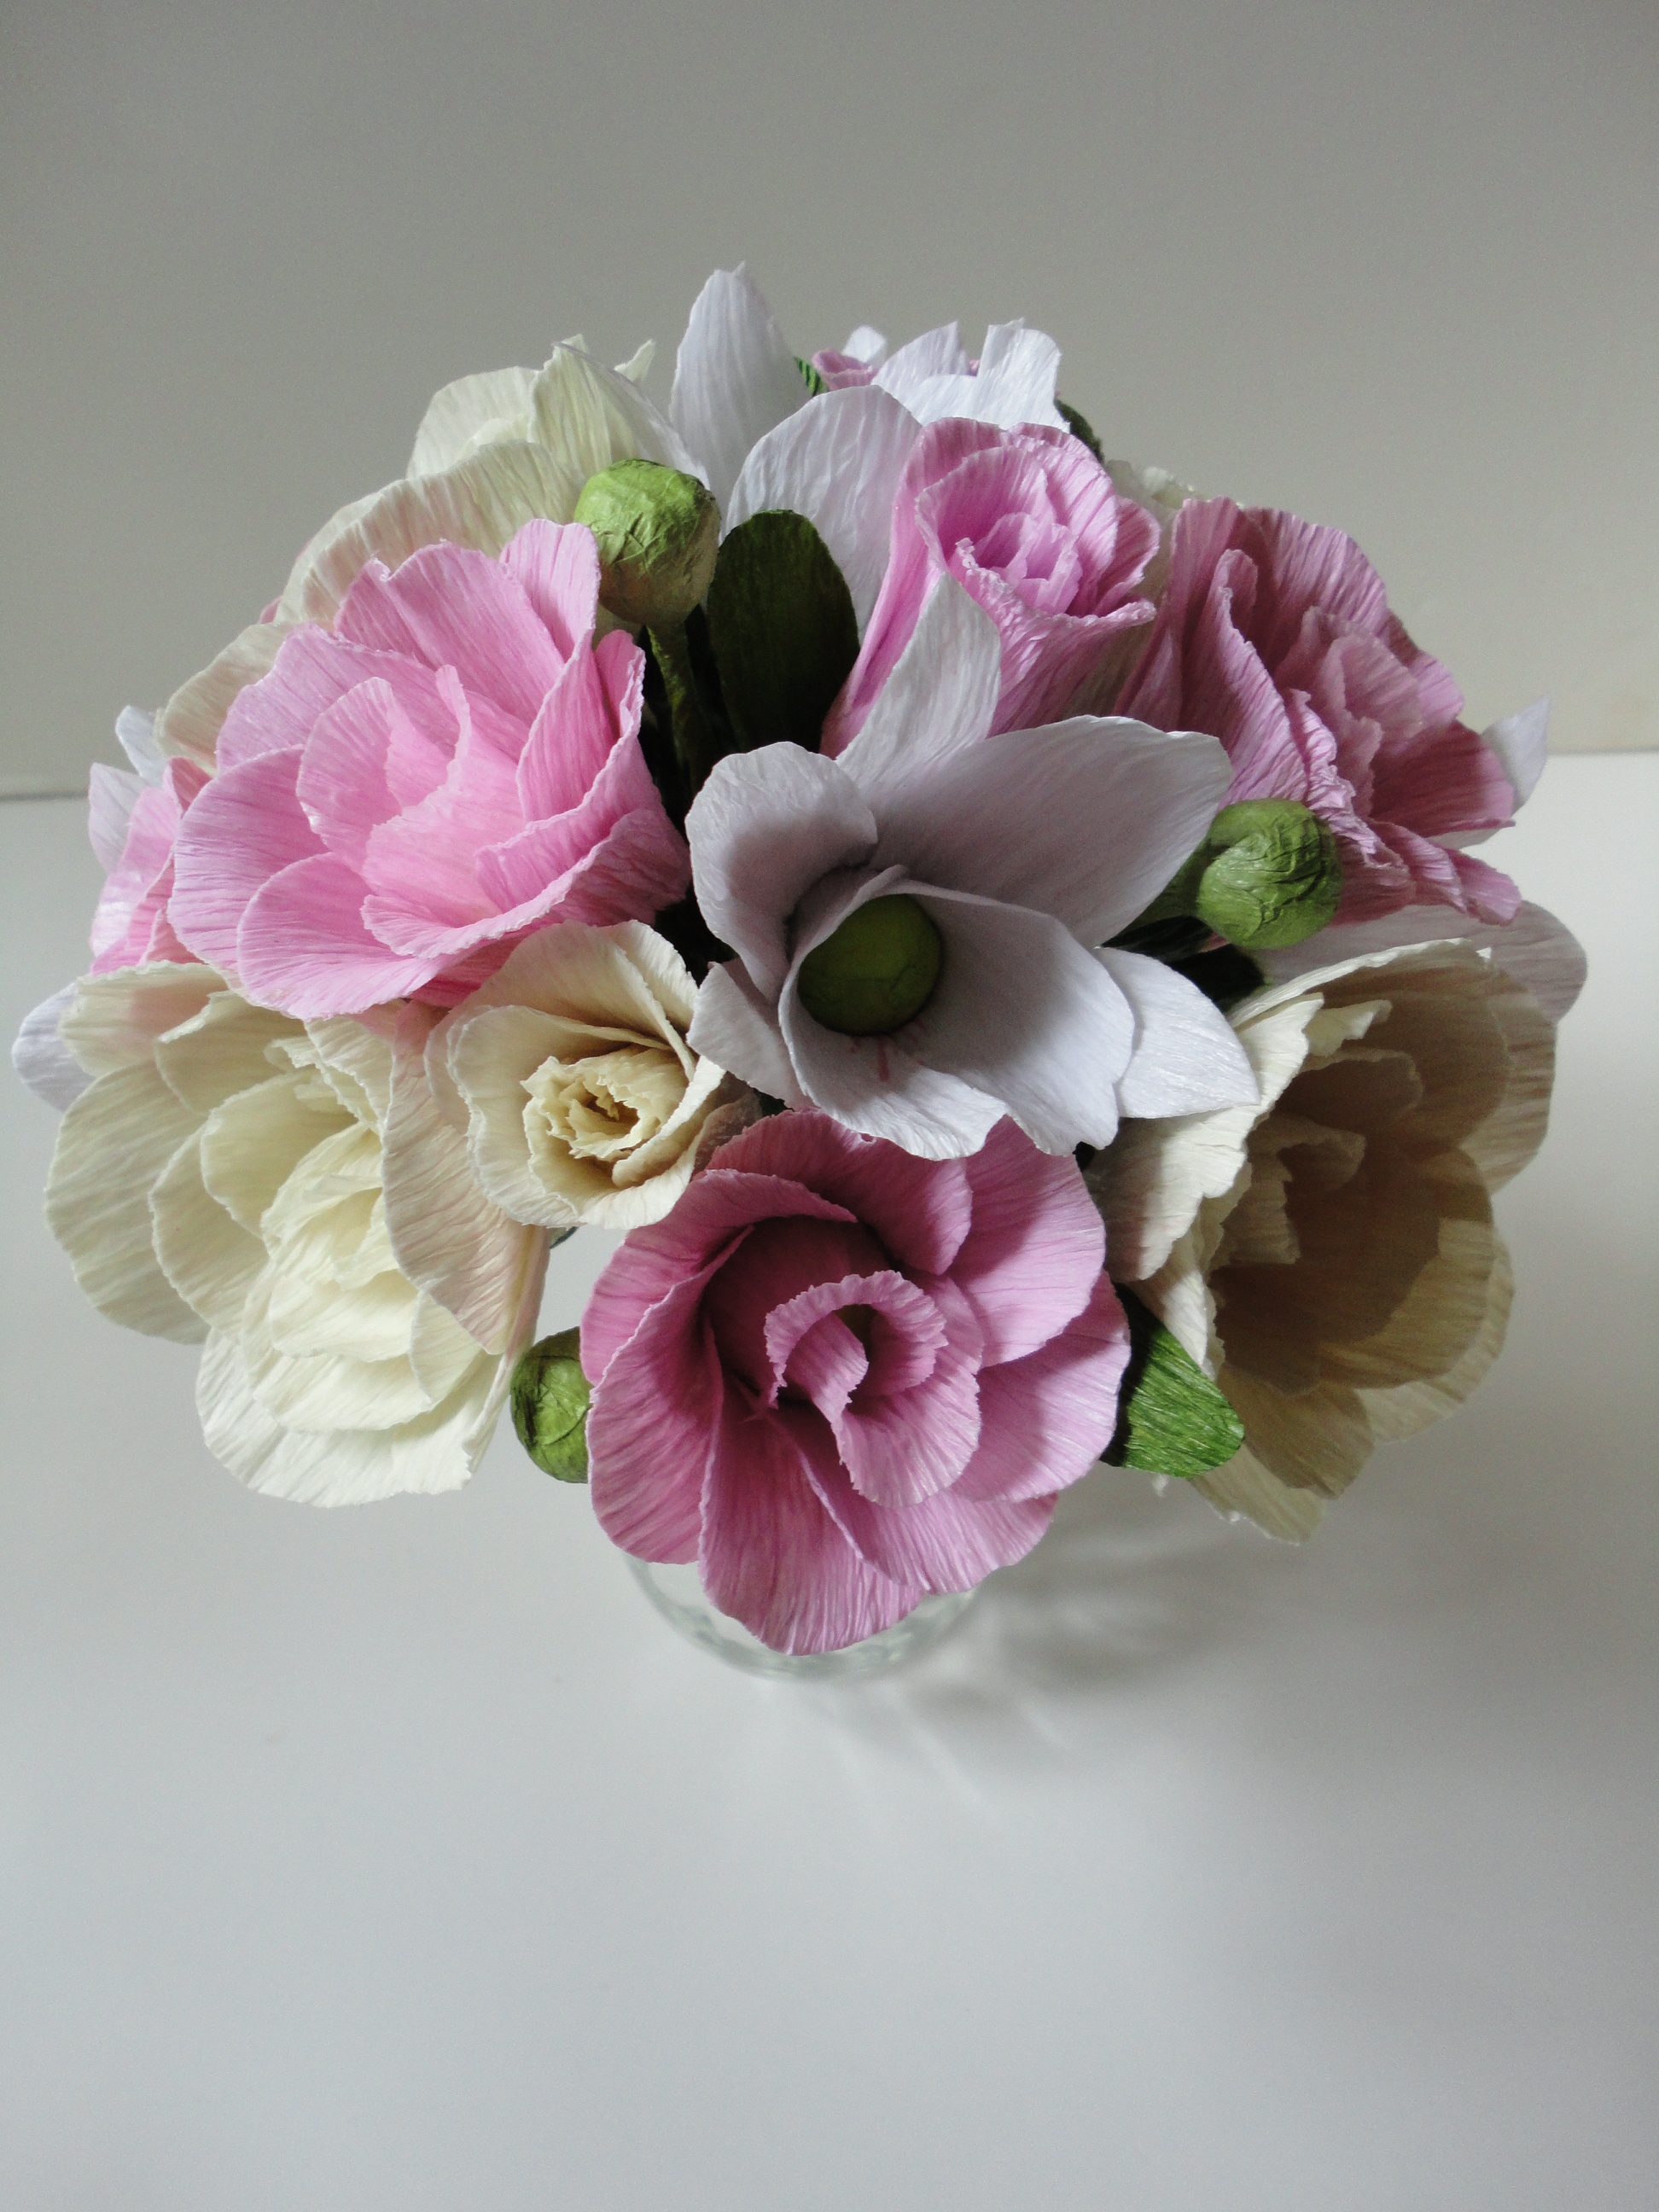 Várias rosas e lisianthios em três cores suaves: cor de rosa claro, creme e branco estão amarrados formando um buquê redondo e harmonioso.